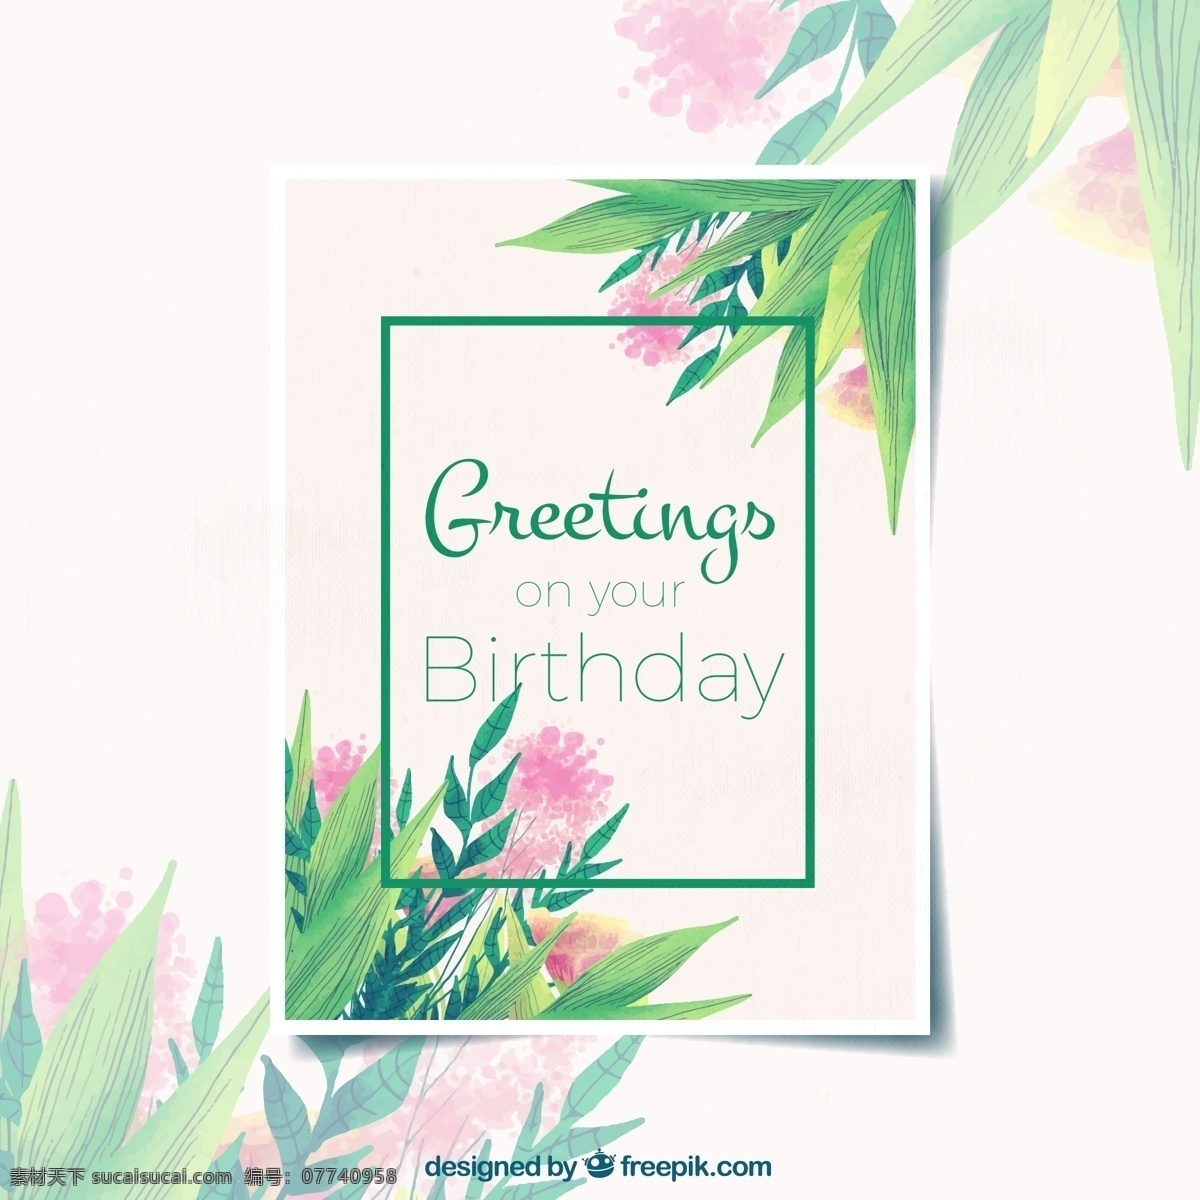 彩绘 花草 生日 祝福卡 花卉 叶子 广告海报设计 名片卡片